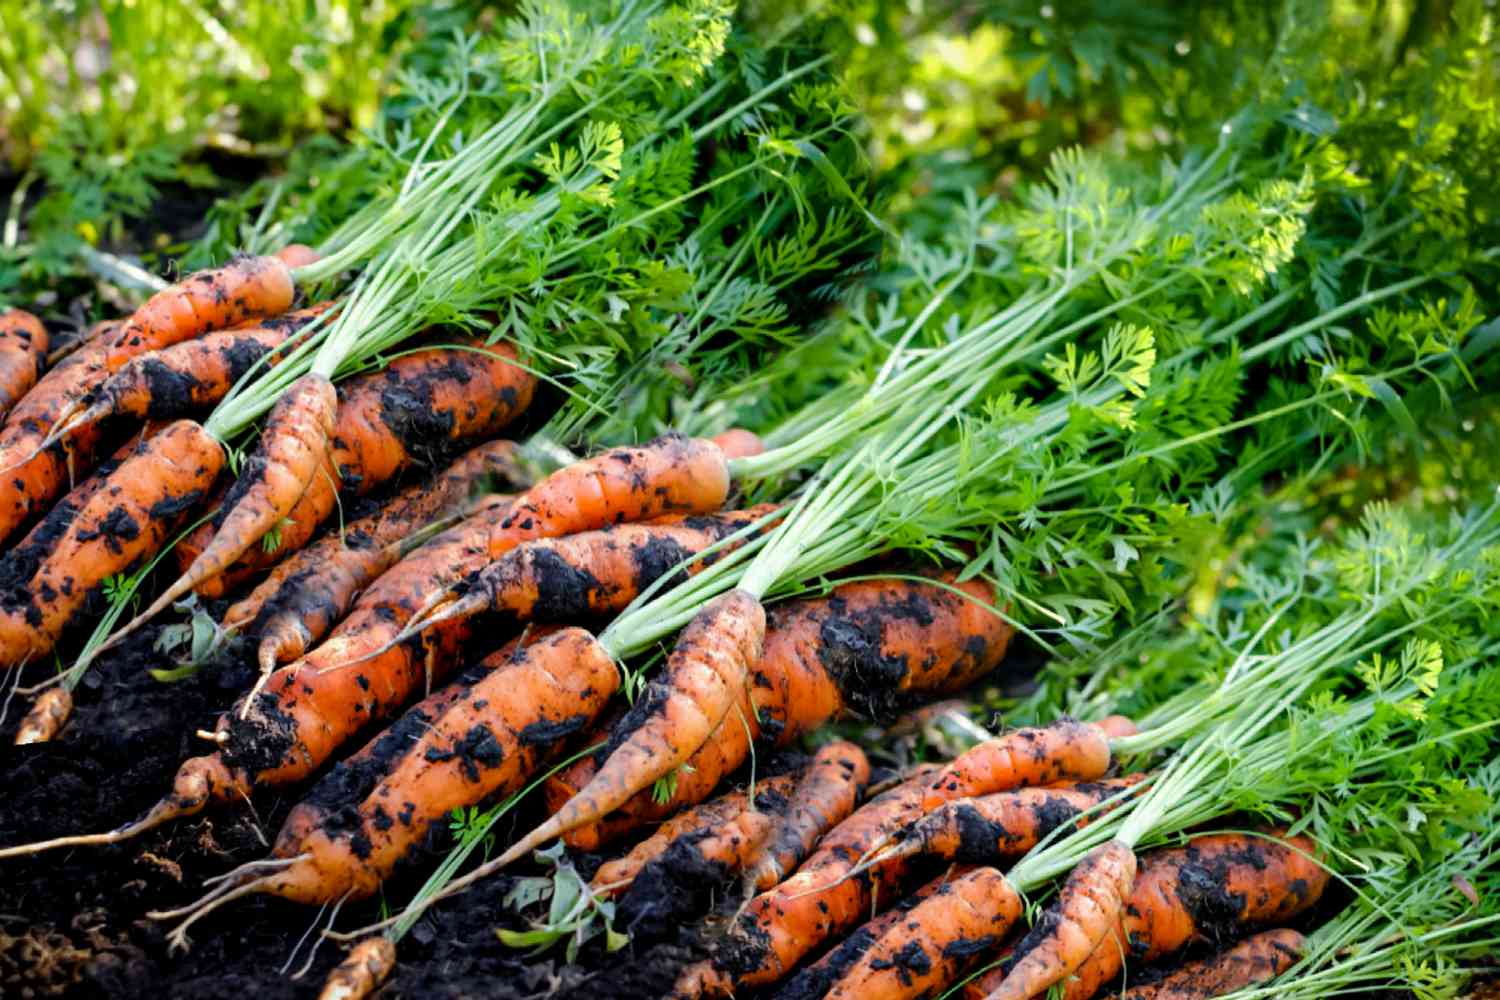 When Should I Plant Carrots